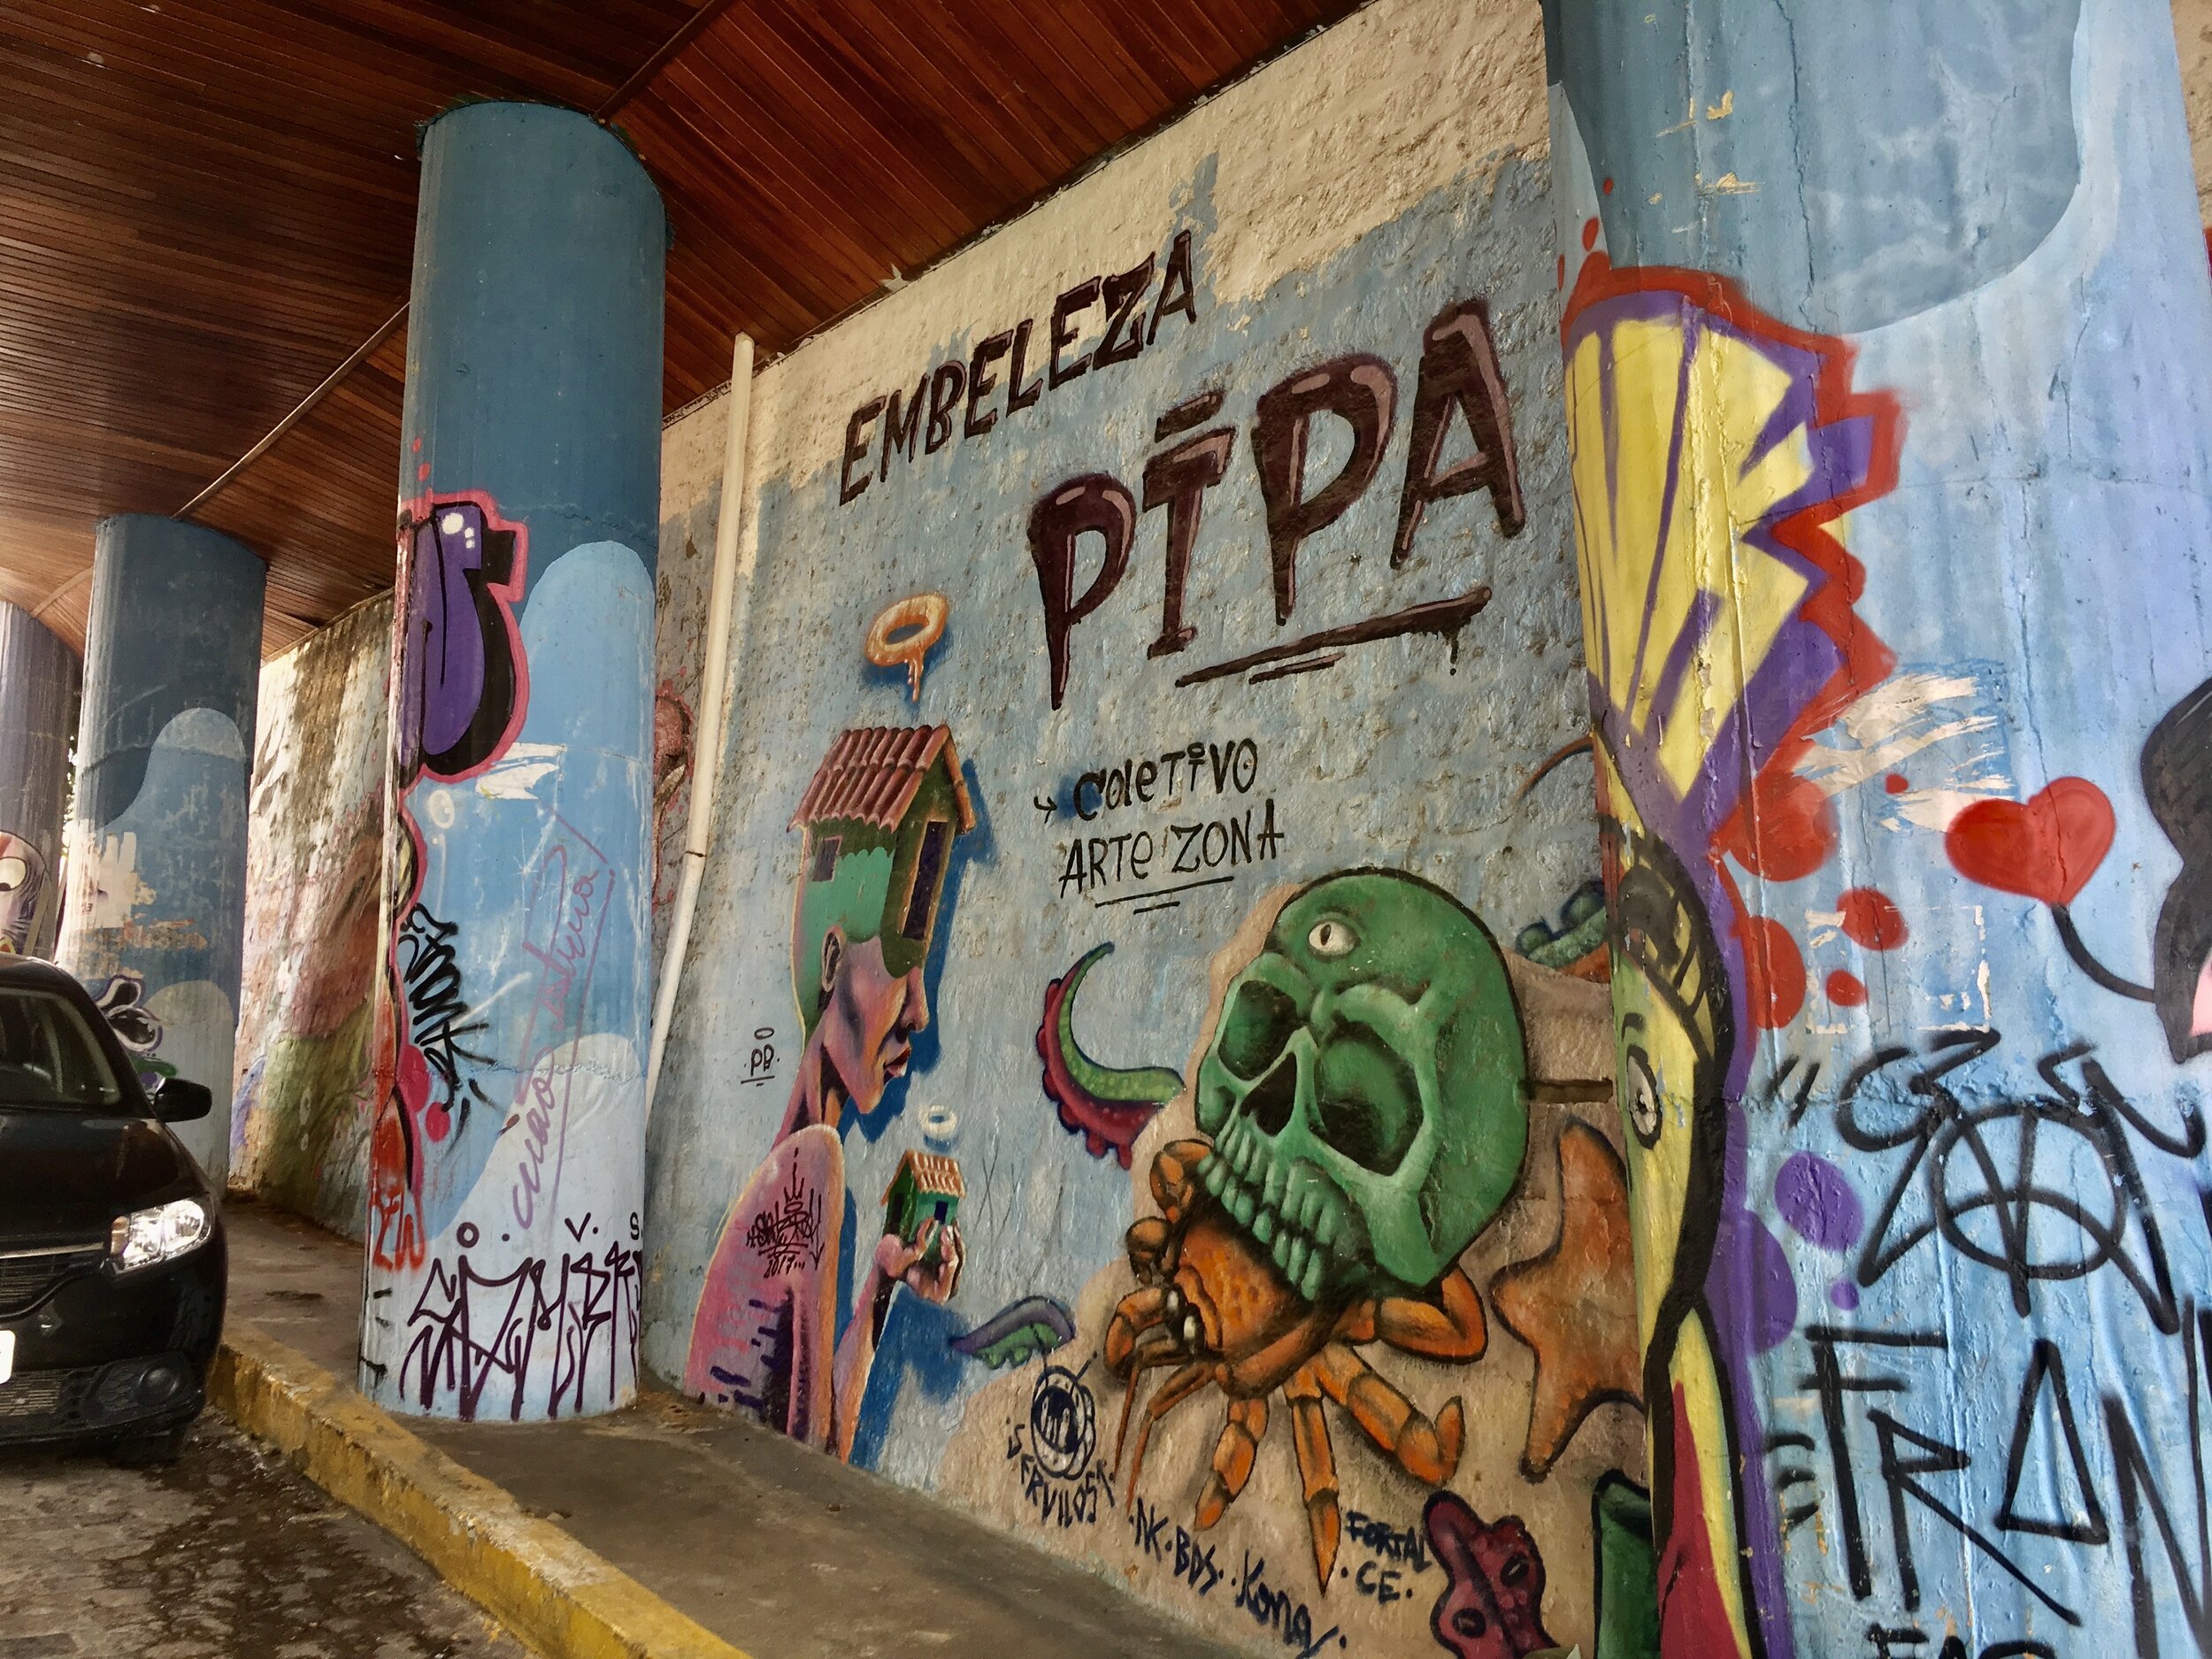 Graffiti in Pipa Beach, Brazil